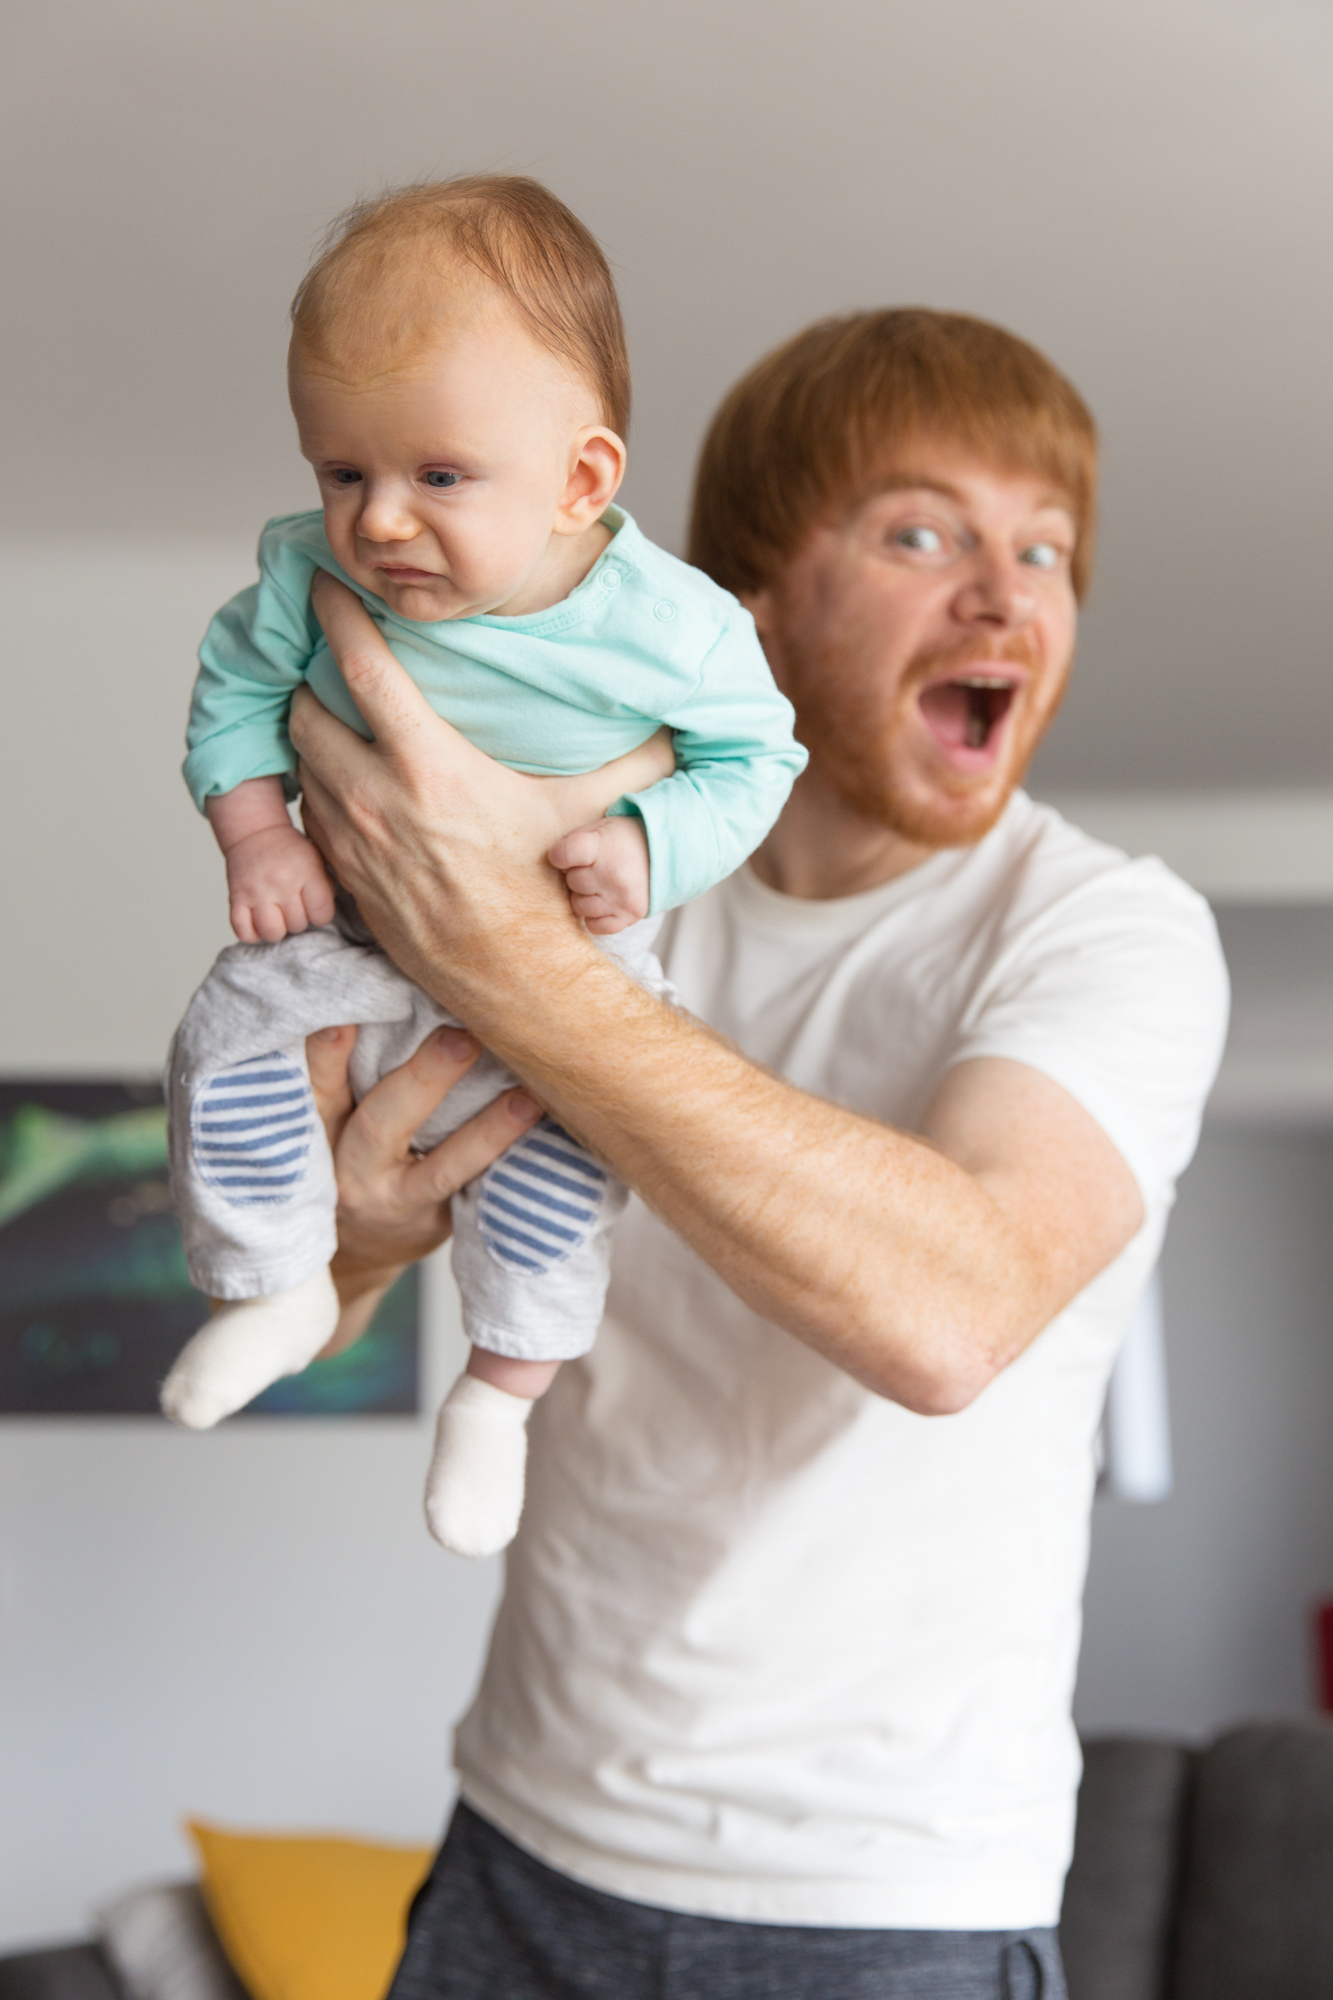 An upset man handing over a baby | Source: Freepik